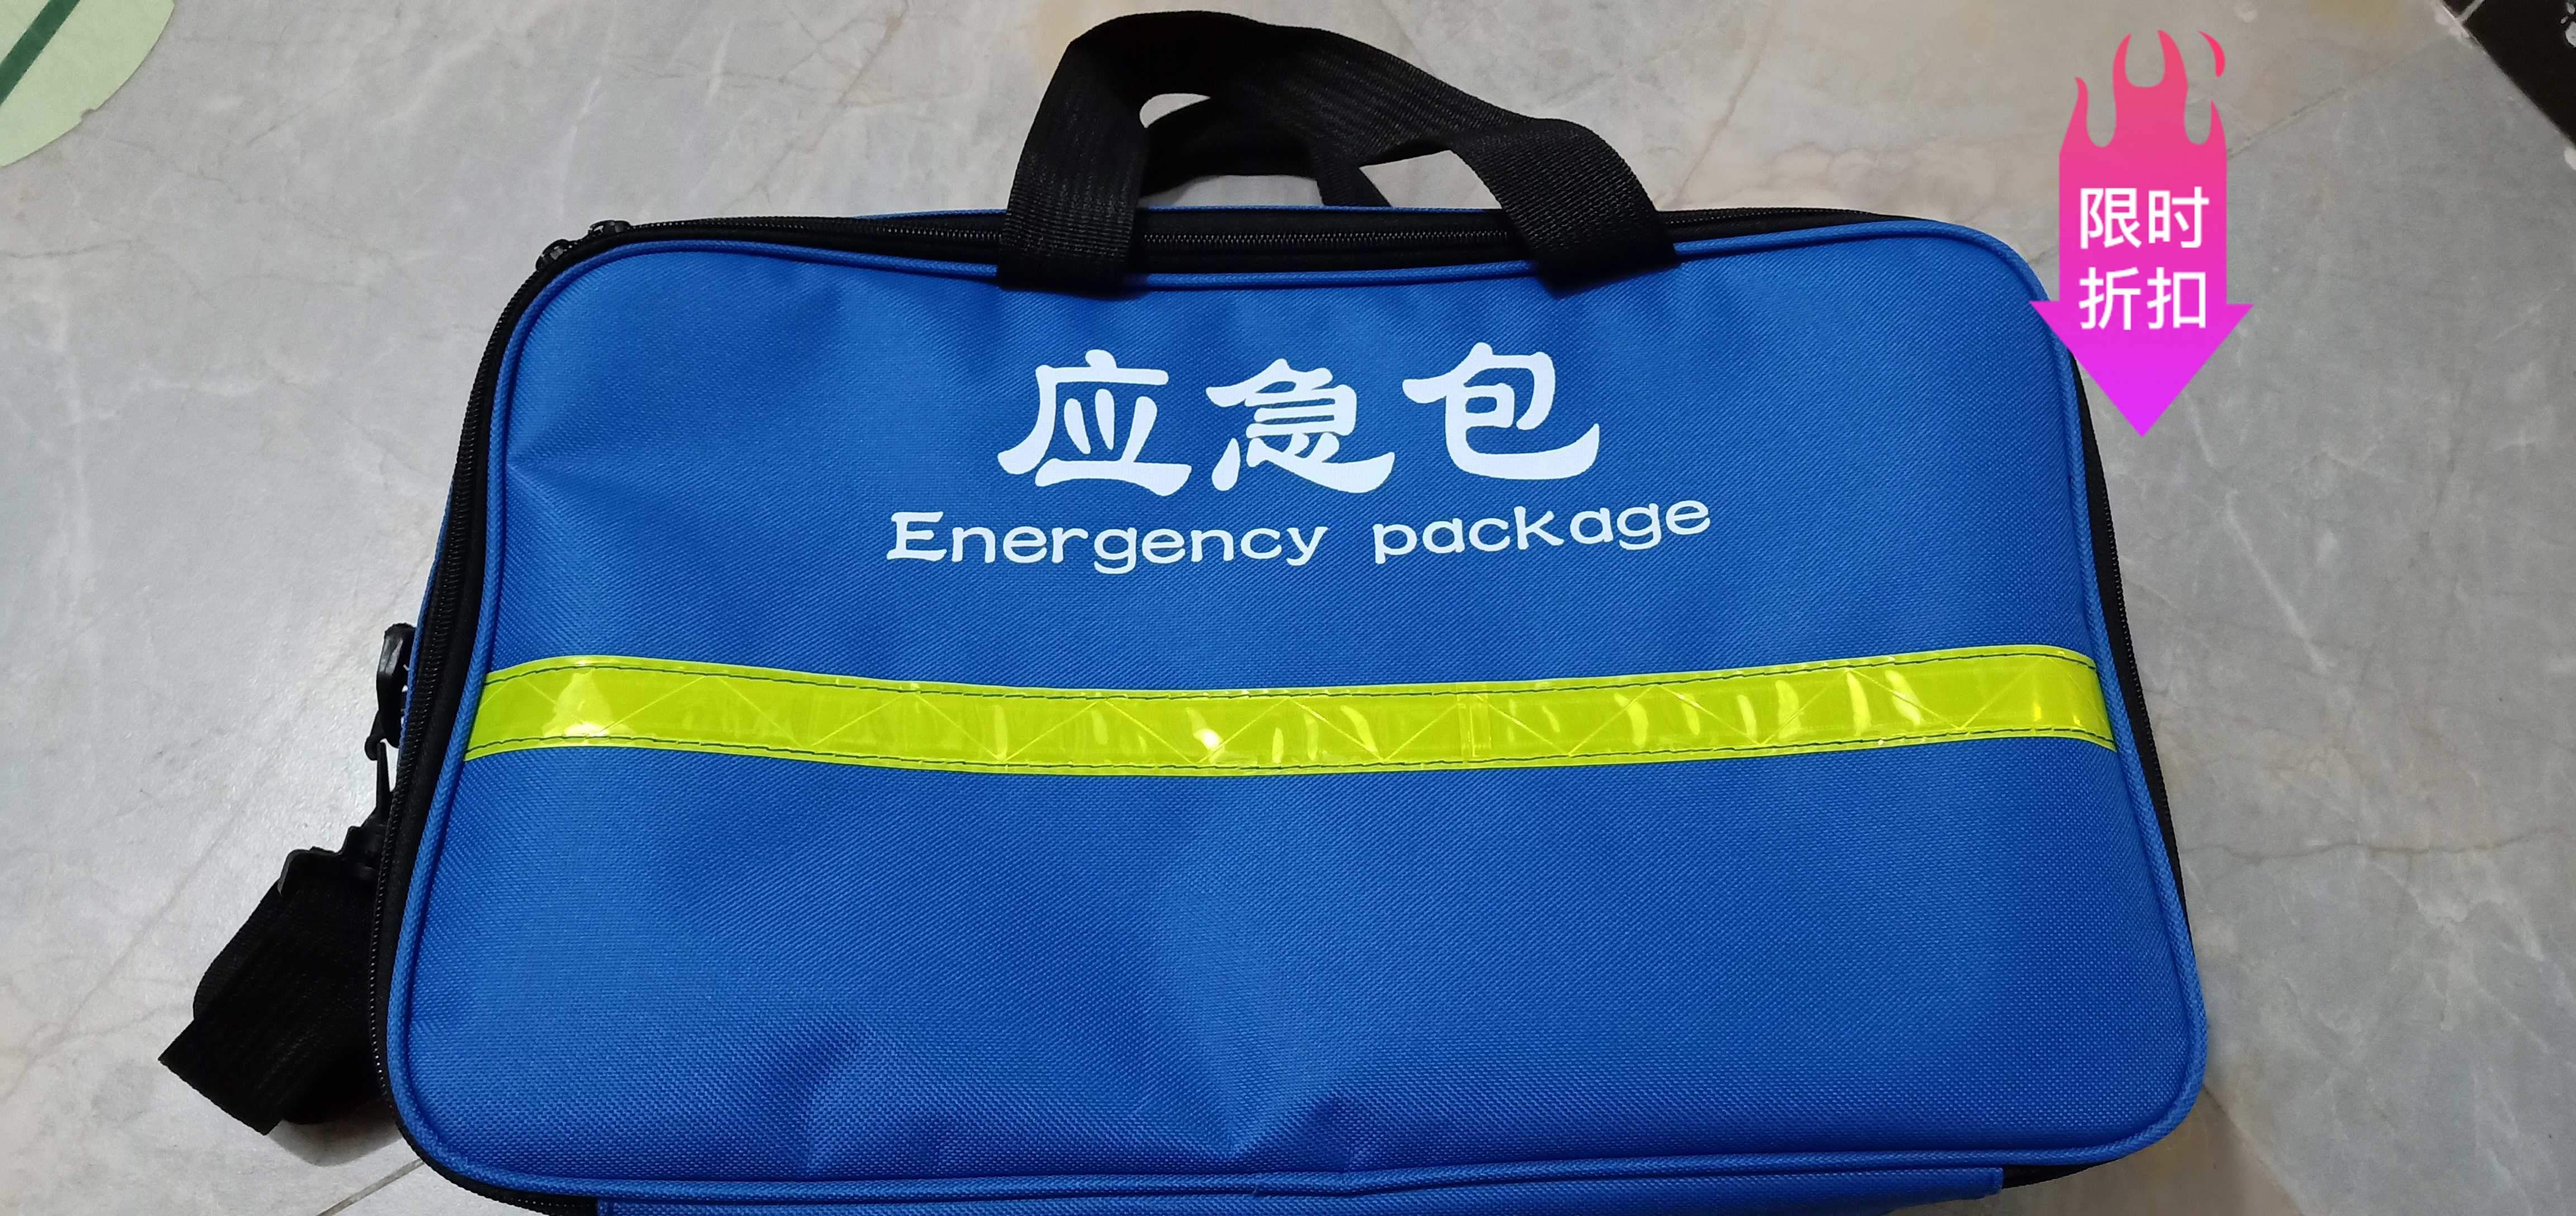 應急包消防藍救援包急救包便攜挎式手提應急包防災地震包